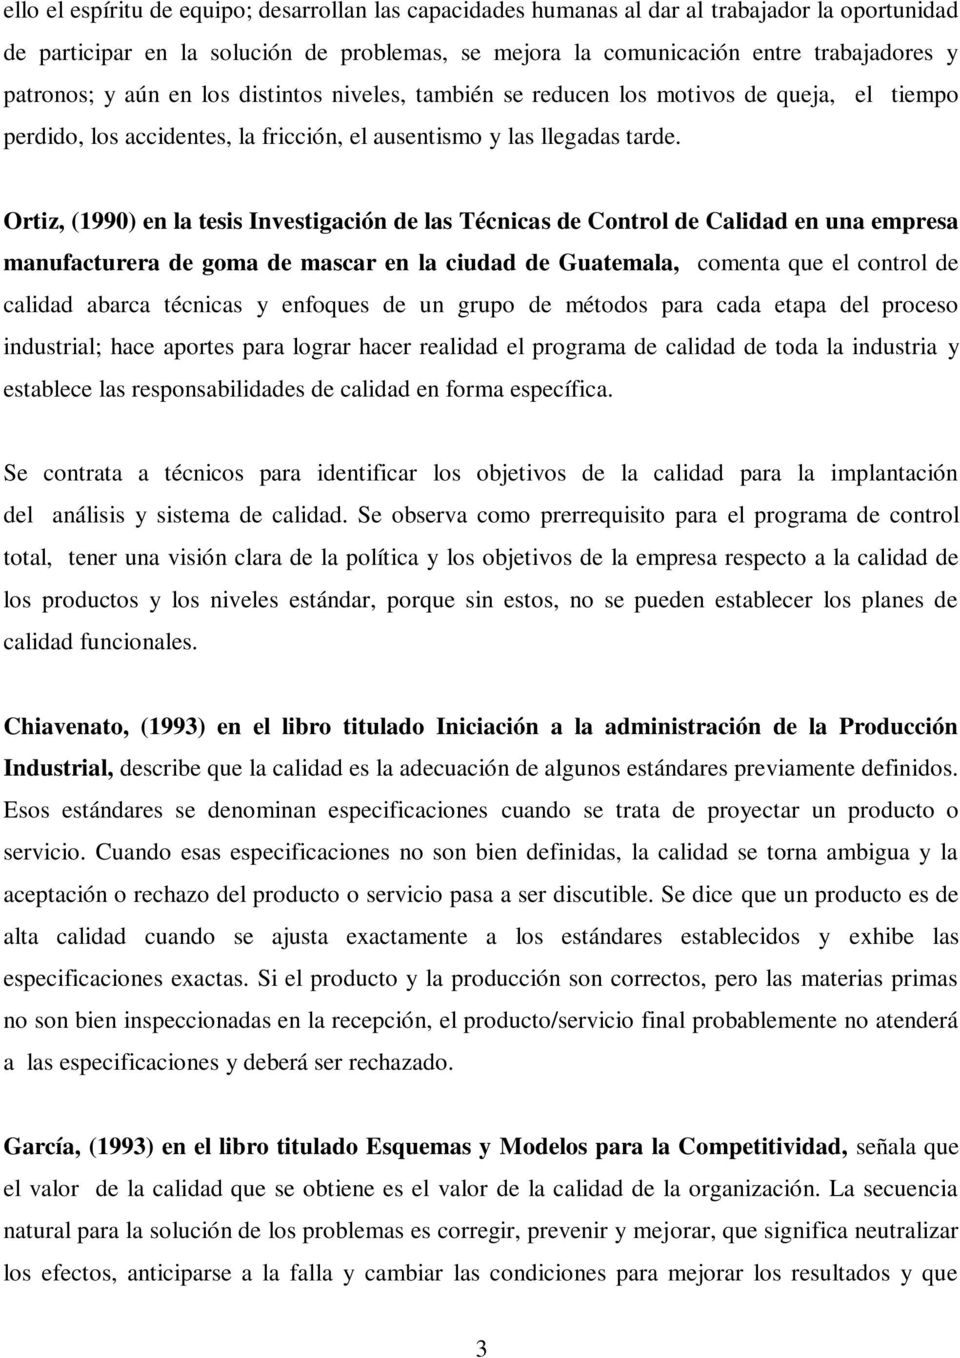 Ortiz, (1990) en la tesis Investigación de las Técnicas de Control de Calidad en una empresa manufacturera de goma de mascar en la ciudad de Guatemala, comenta que el control de calidad abarca